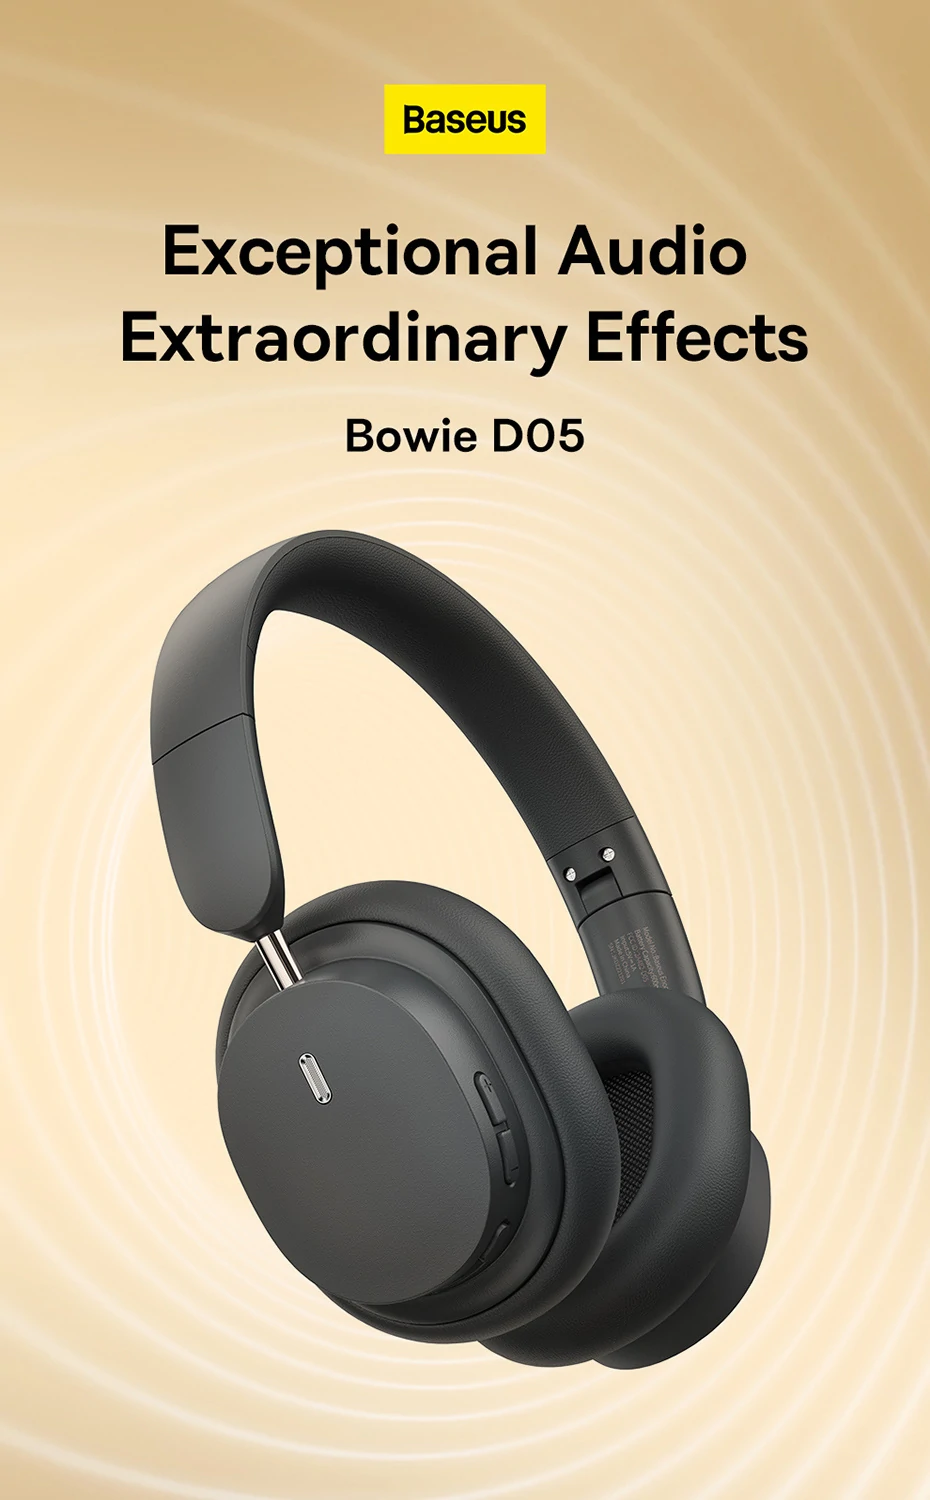 Baseus Bowie D05 Bluetooth slušalice s posebnom 3D mogućnošću